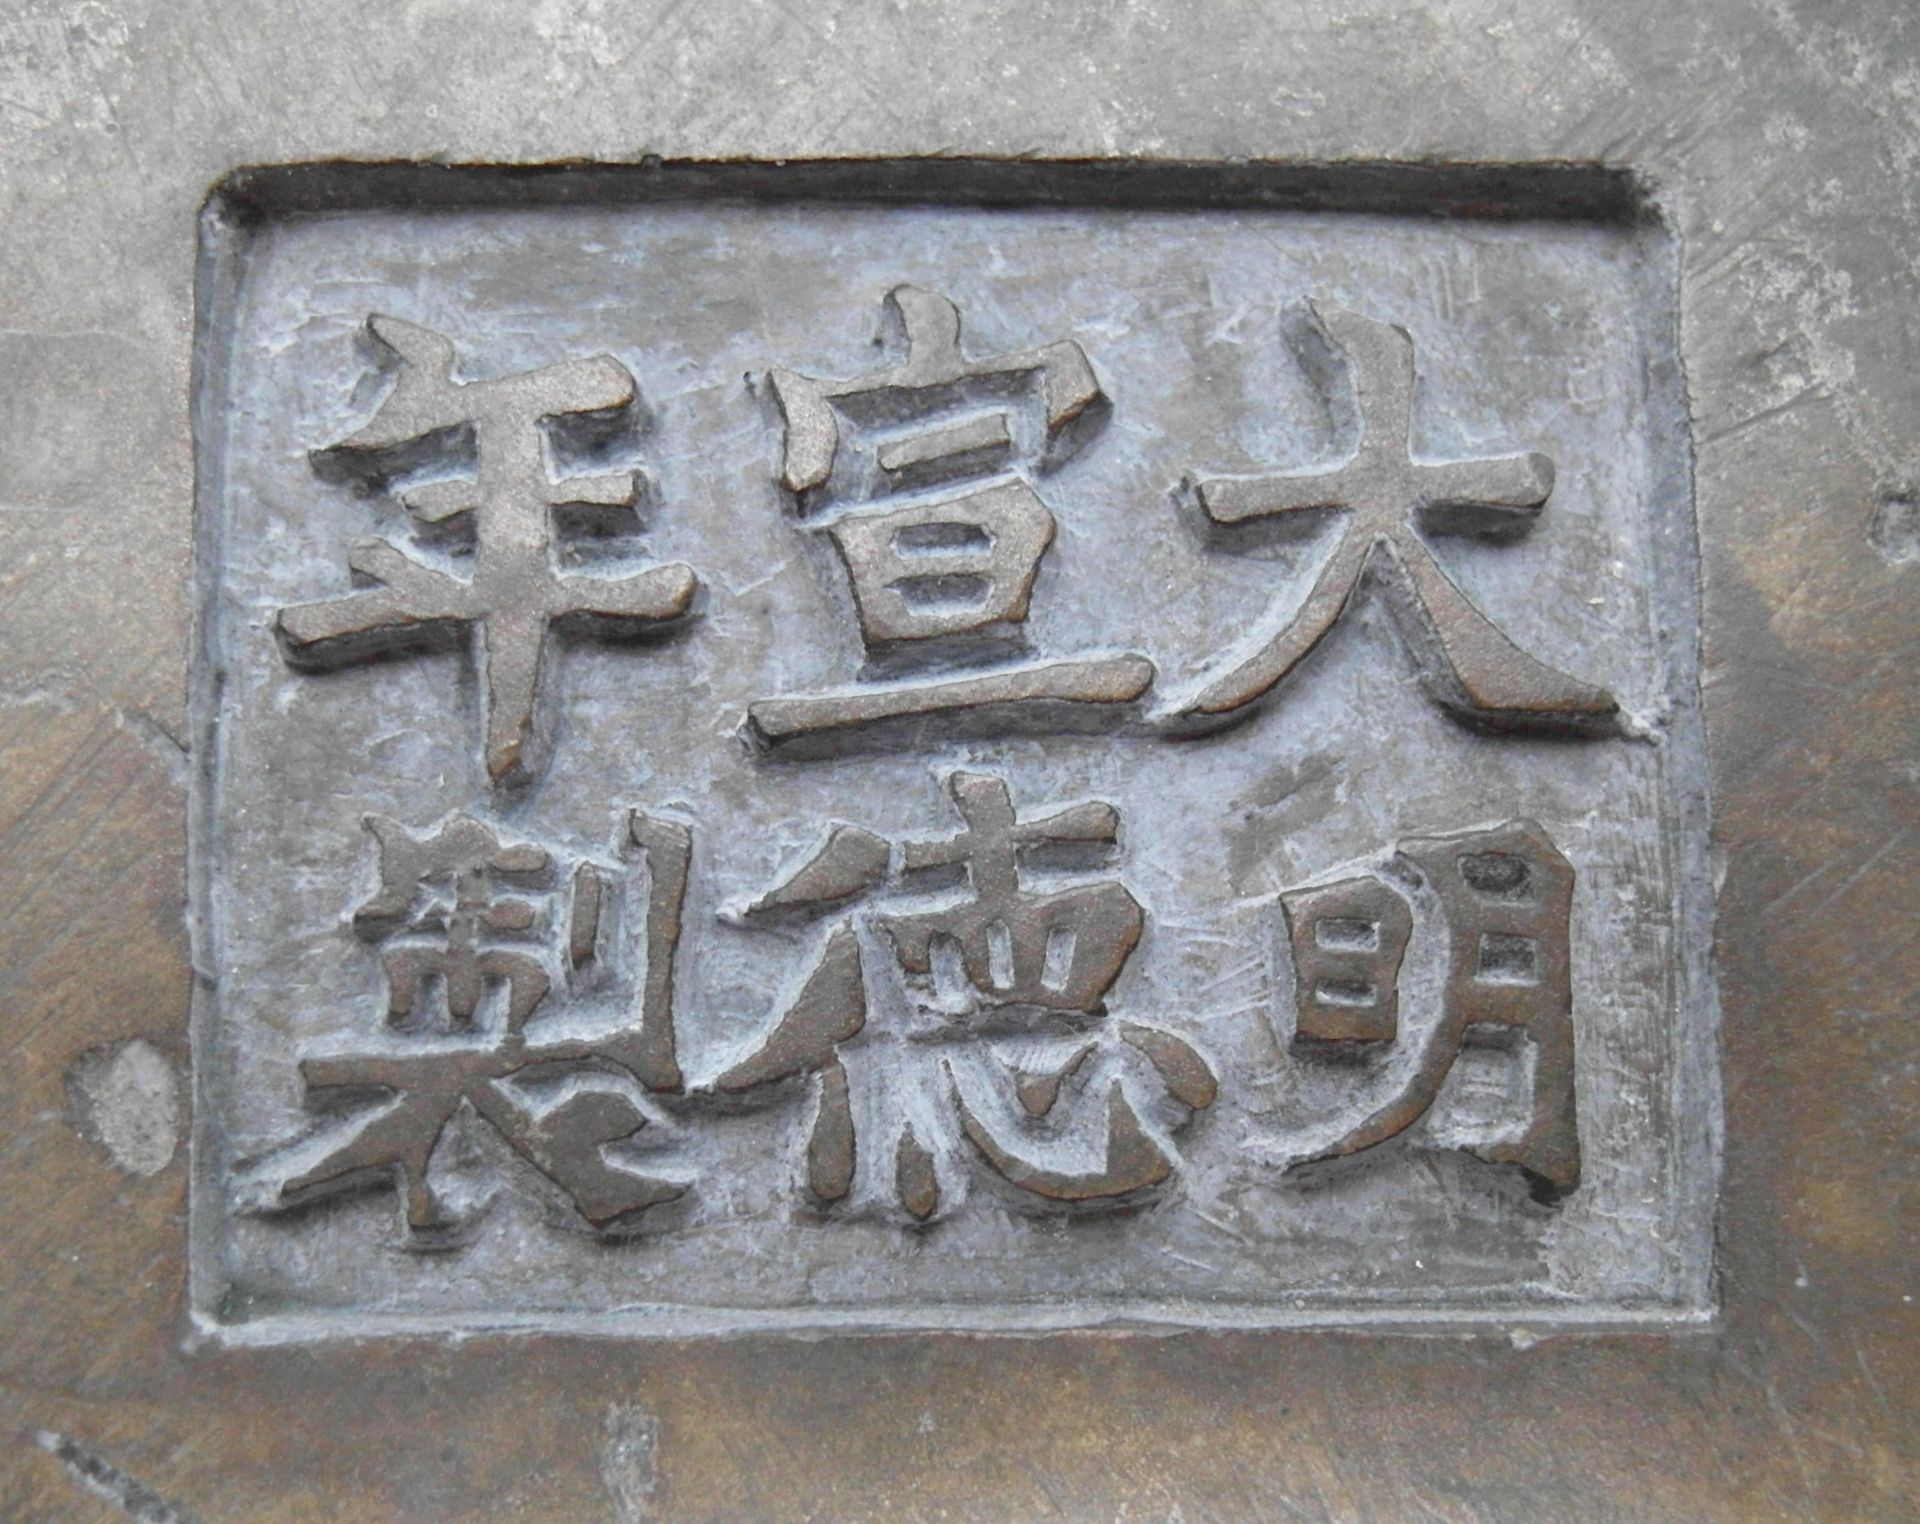 GROßER WEIHRAUCHBRENNER IN GUI-FORM MIT DRACHEN-HENKELN. China. Qing-Dynastie. 19. Jh. Bronze mit - Image 2 of 2